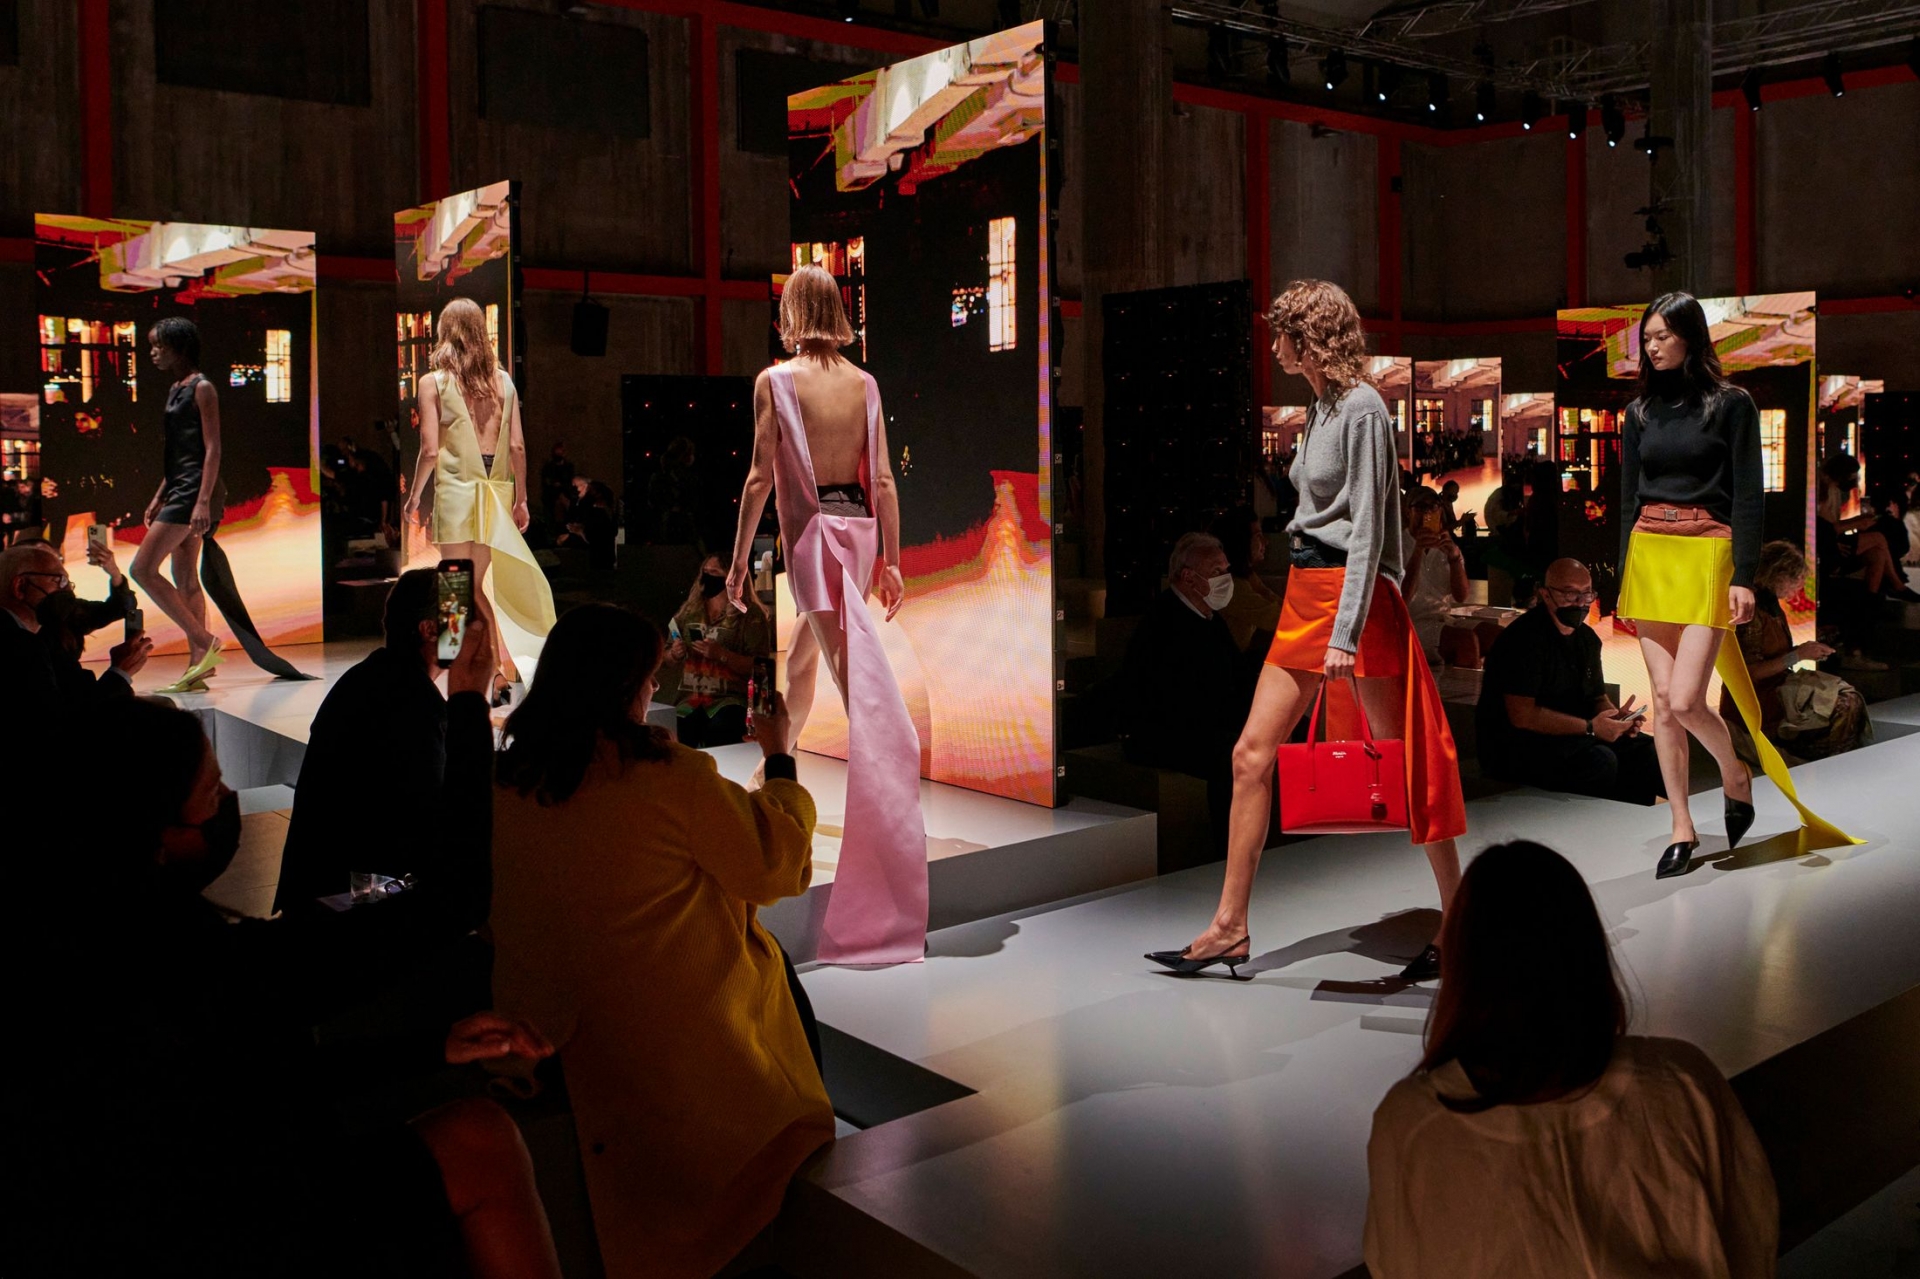 Khán giả tham dự show ở ở Milan, một trong 4 kinh đô thời trang lớn nhất thế giới sẽ được chiêm ngưỡng những thiết kế được trình diễn bởi người mẫu Trung Quốc cùng lúc ở màn hình lớn đặt ở nhiều góc của sàn diễn.